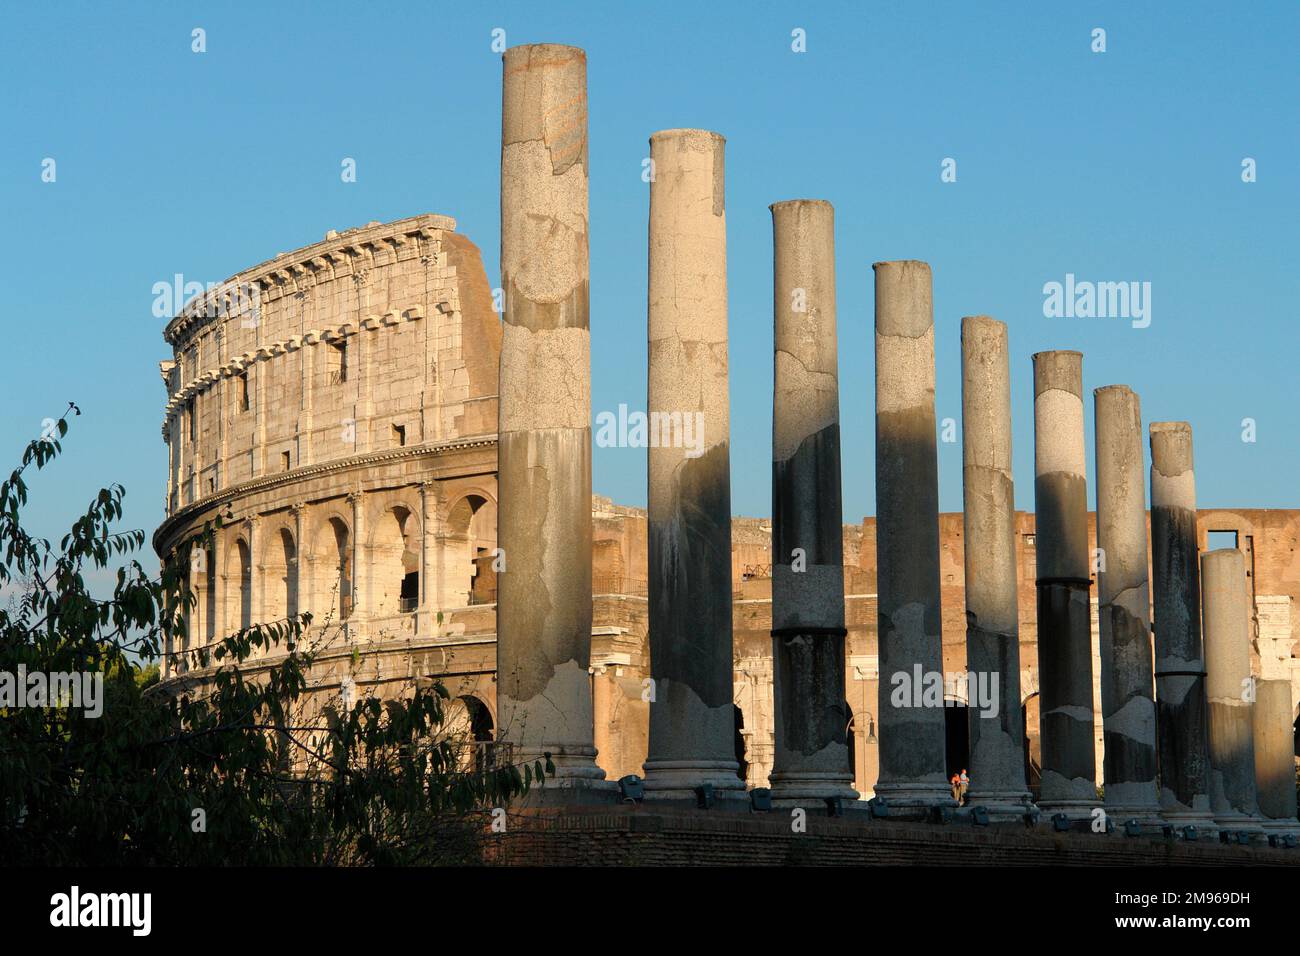 Blick auf das Kolosseum (links), mit einer Reihe römischer Säulen im Vordergrund, Rom, Italien. Das 80 v. Chr. fertiggestellte Amphitheater Kolosseum war der Hauptplatz in Rom für Gladiatorenwettbewerbe und andere öffentliche Spektakel, einschließlich der Hinrichtung von Kriminellen, und konnte 50.000 Zuschauer aufnehmen. Stockfoto